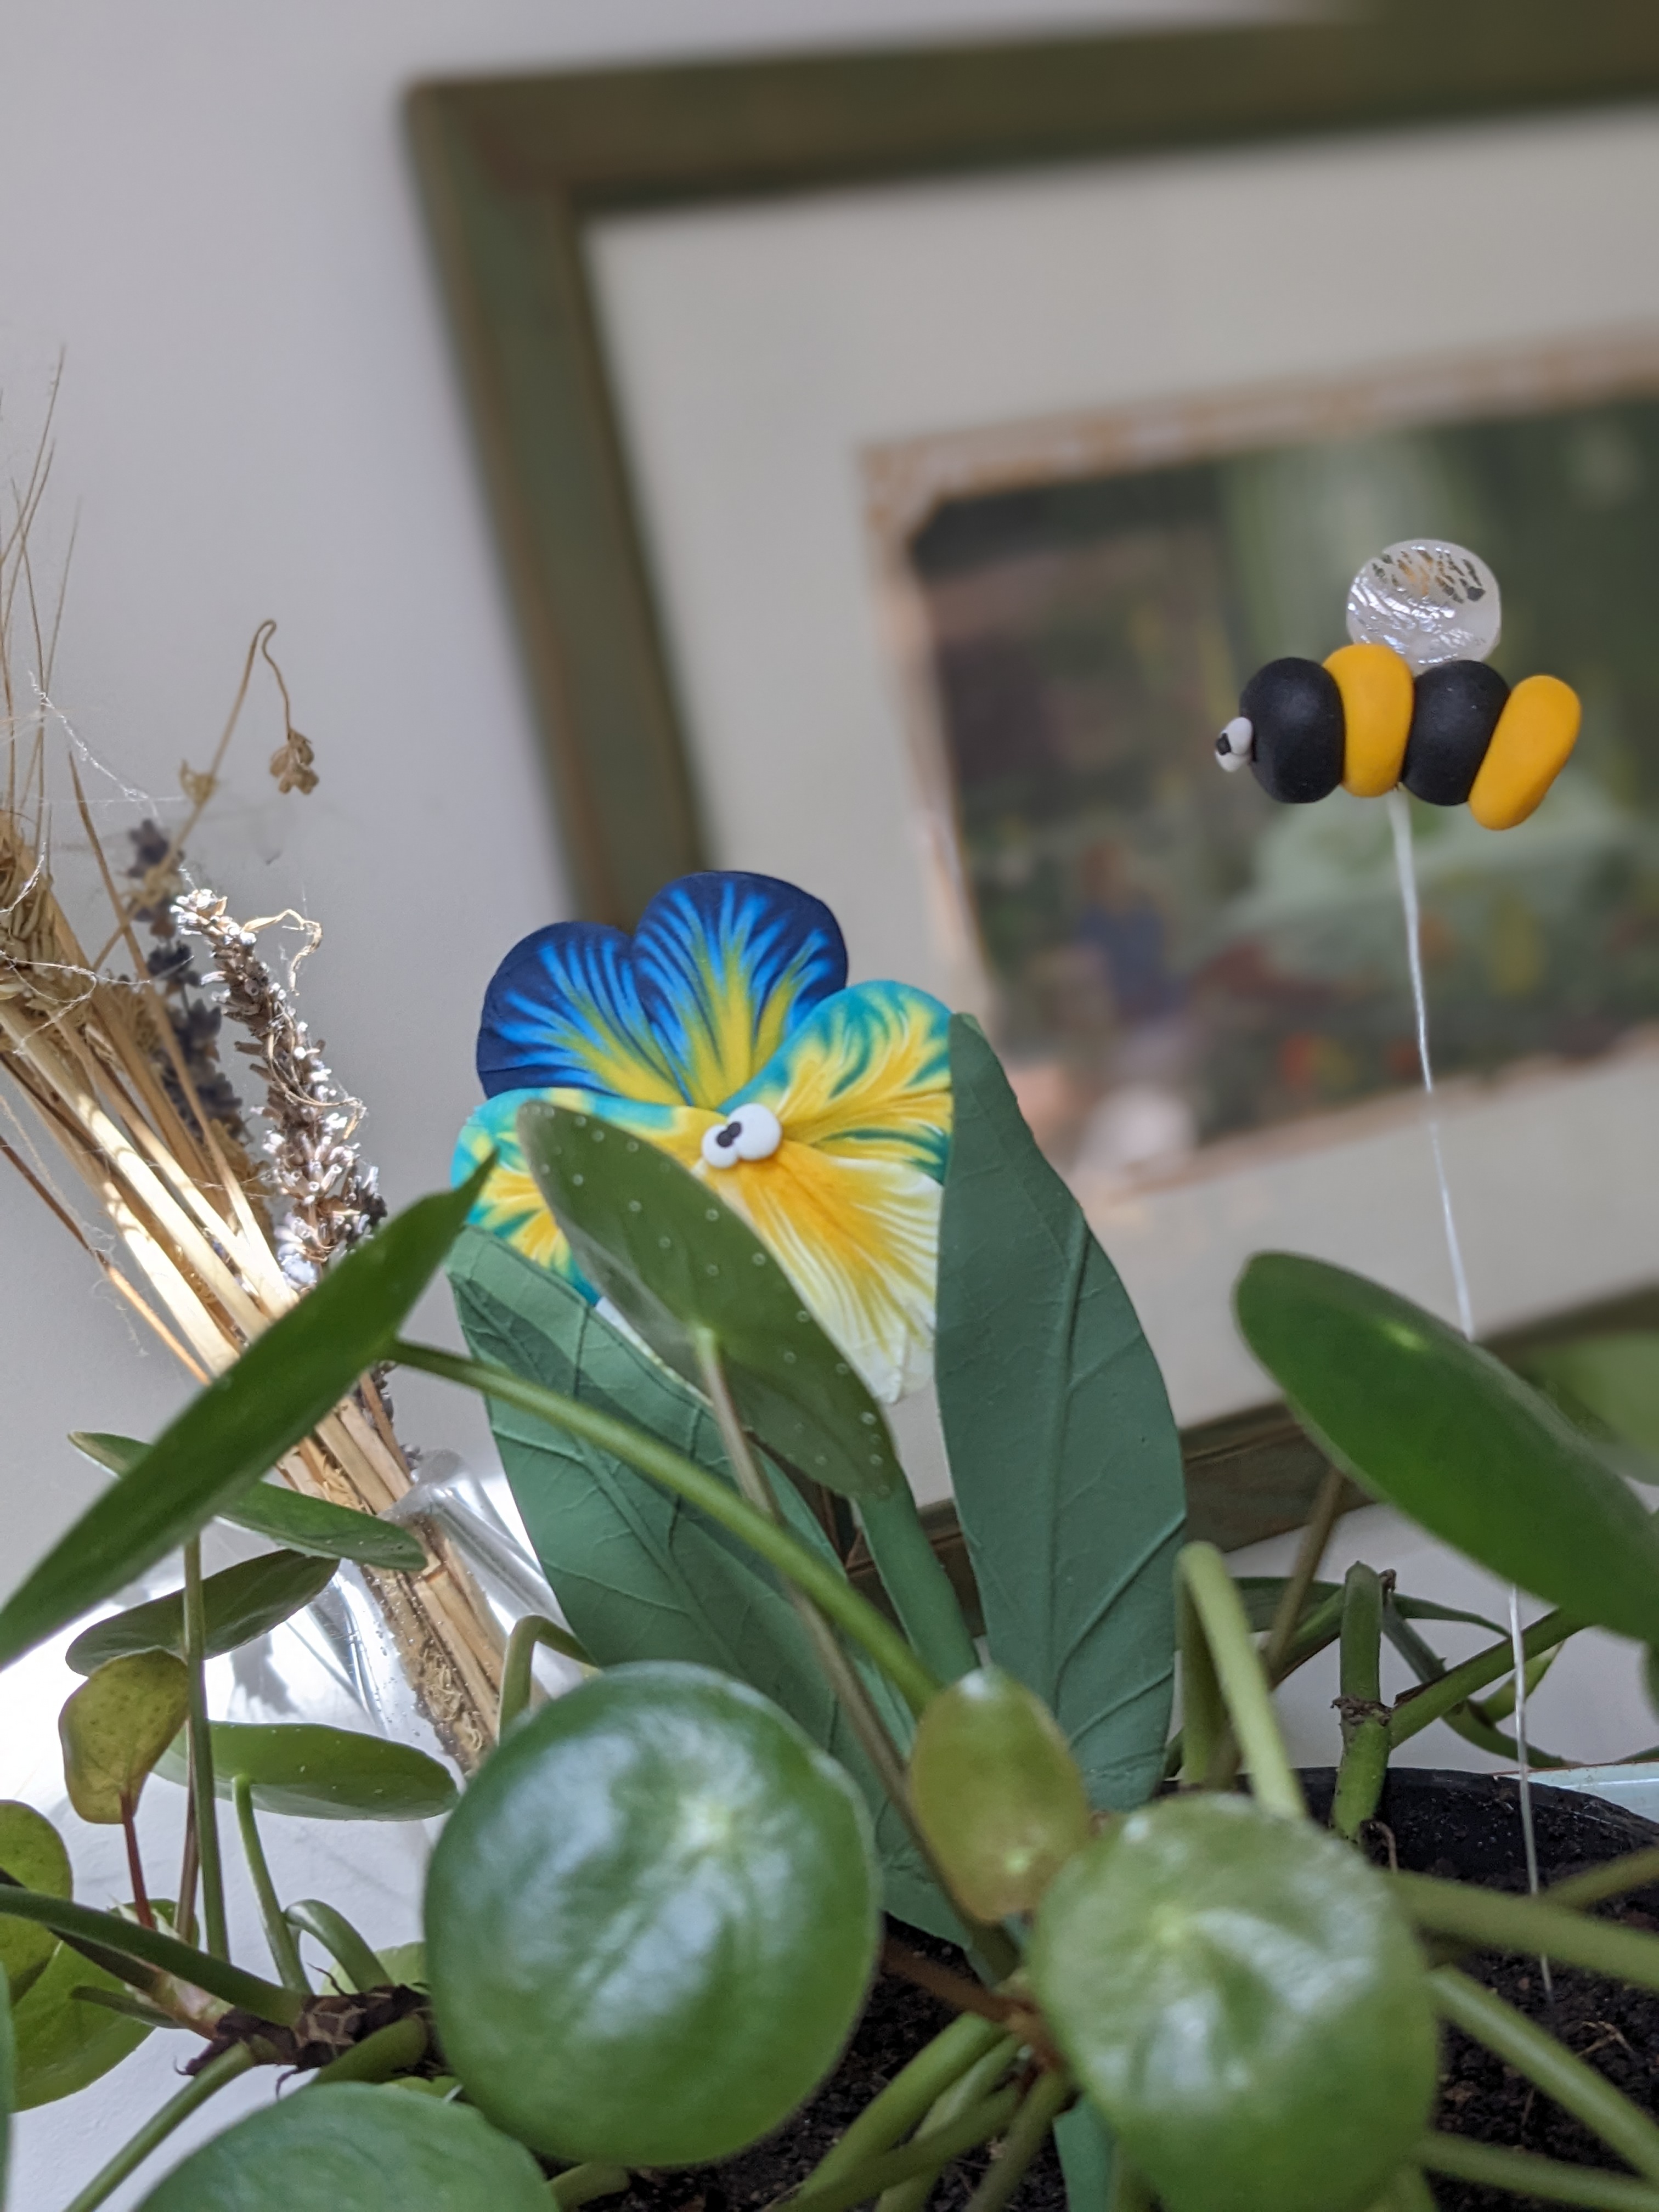 Au Jardin : Retrouvez ici une collection éclatante de figurines inspirées de la nature. Des abeilles butinant des fleurs de pensée aux papillons virevoltants parmi les fleurs, chaque pièce capturera la beauté et la magie des espaces extérieurs.